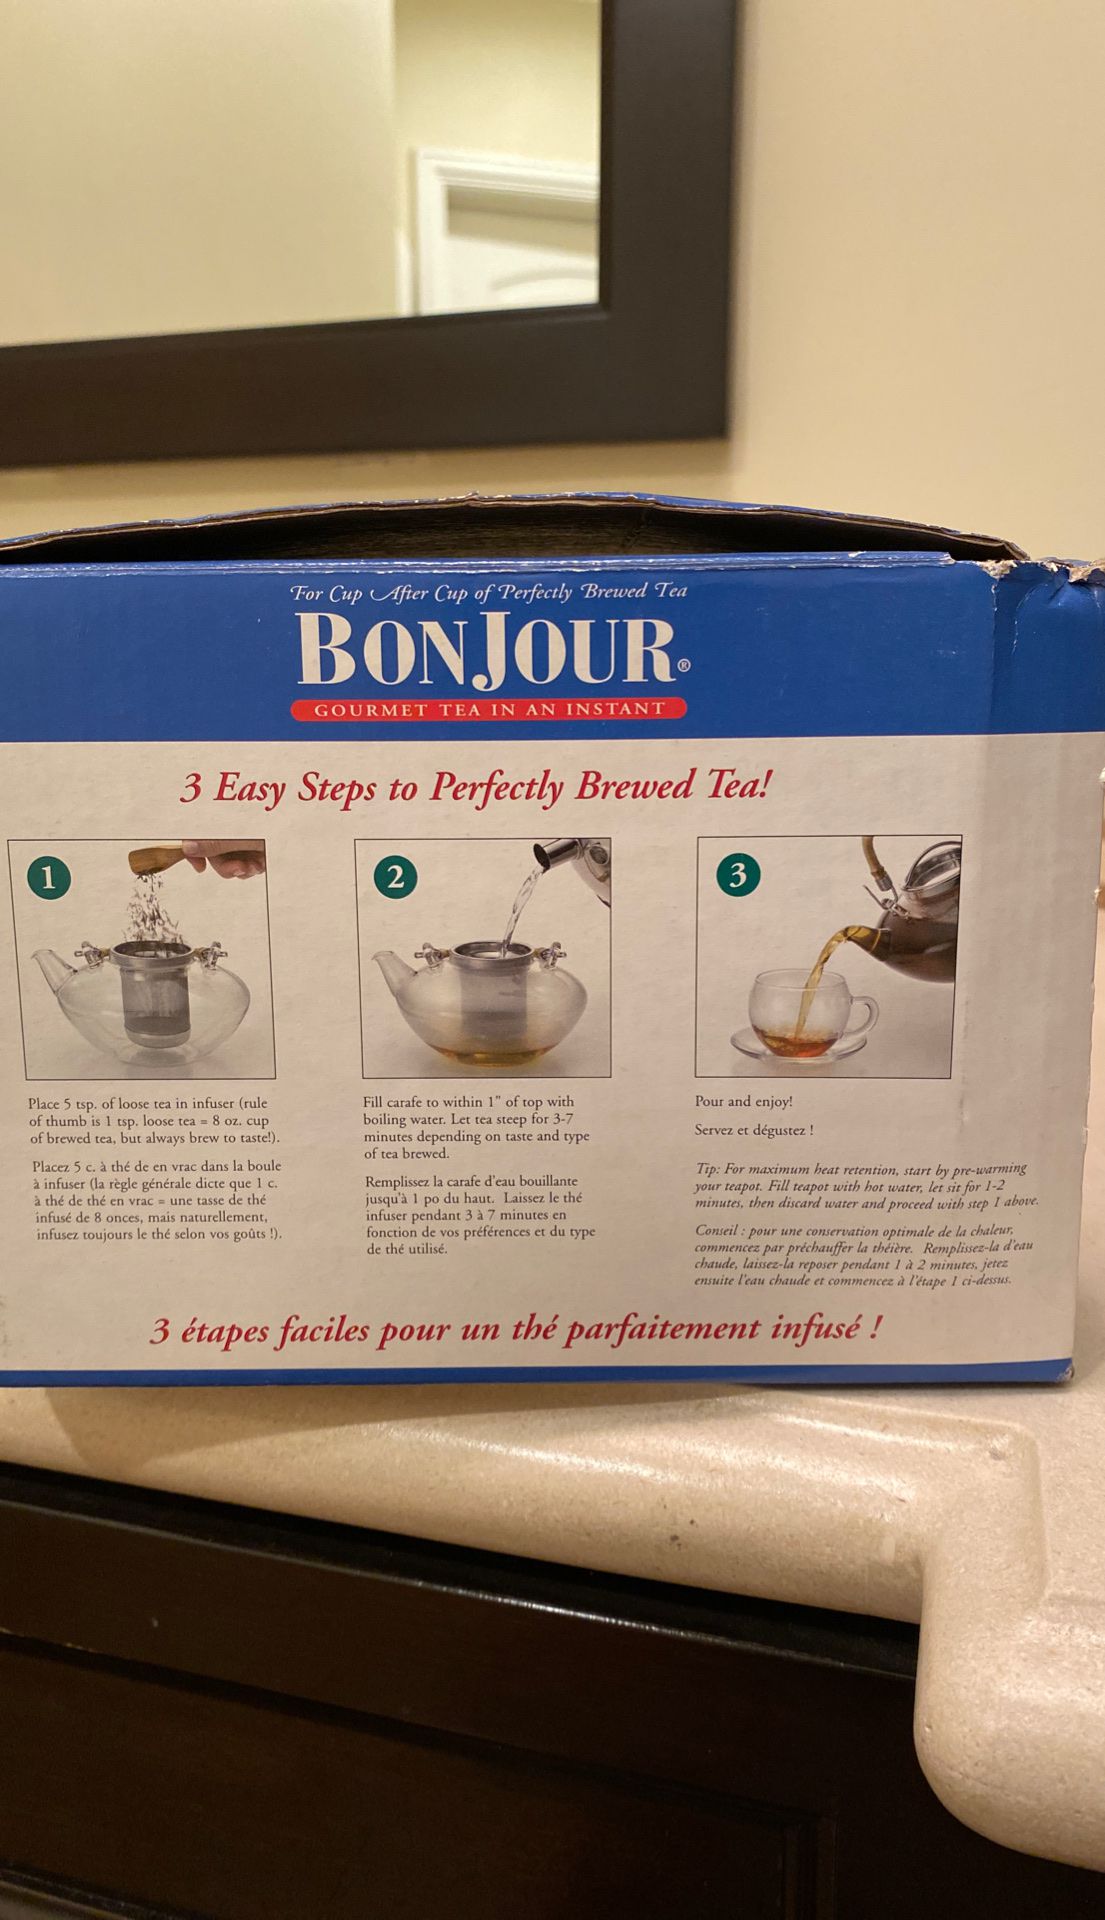 Bonjour Glass tea kettle